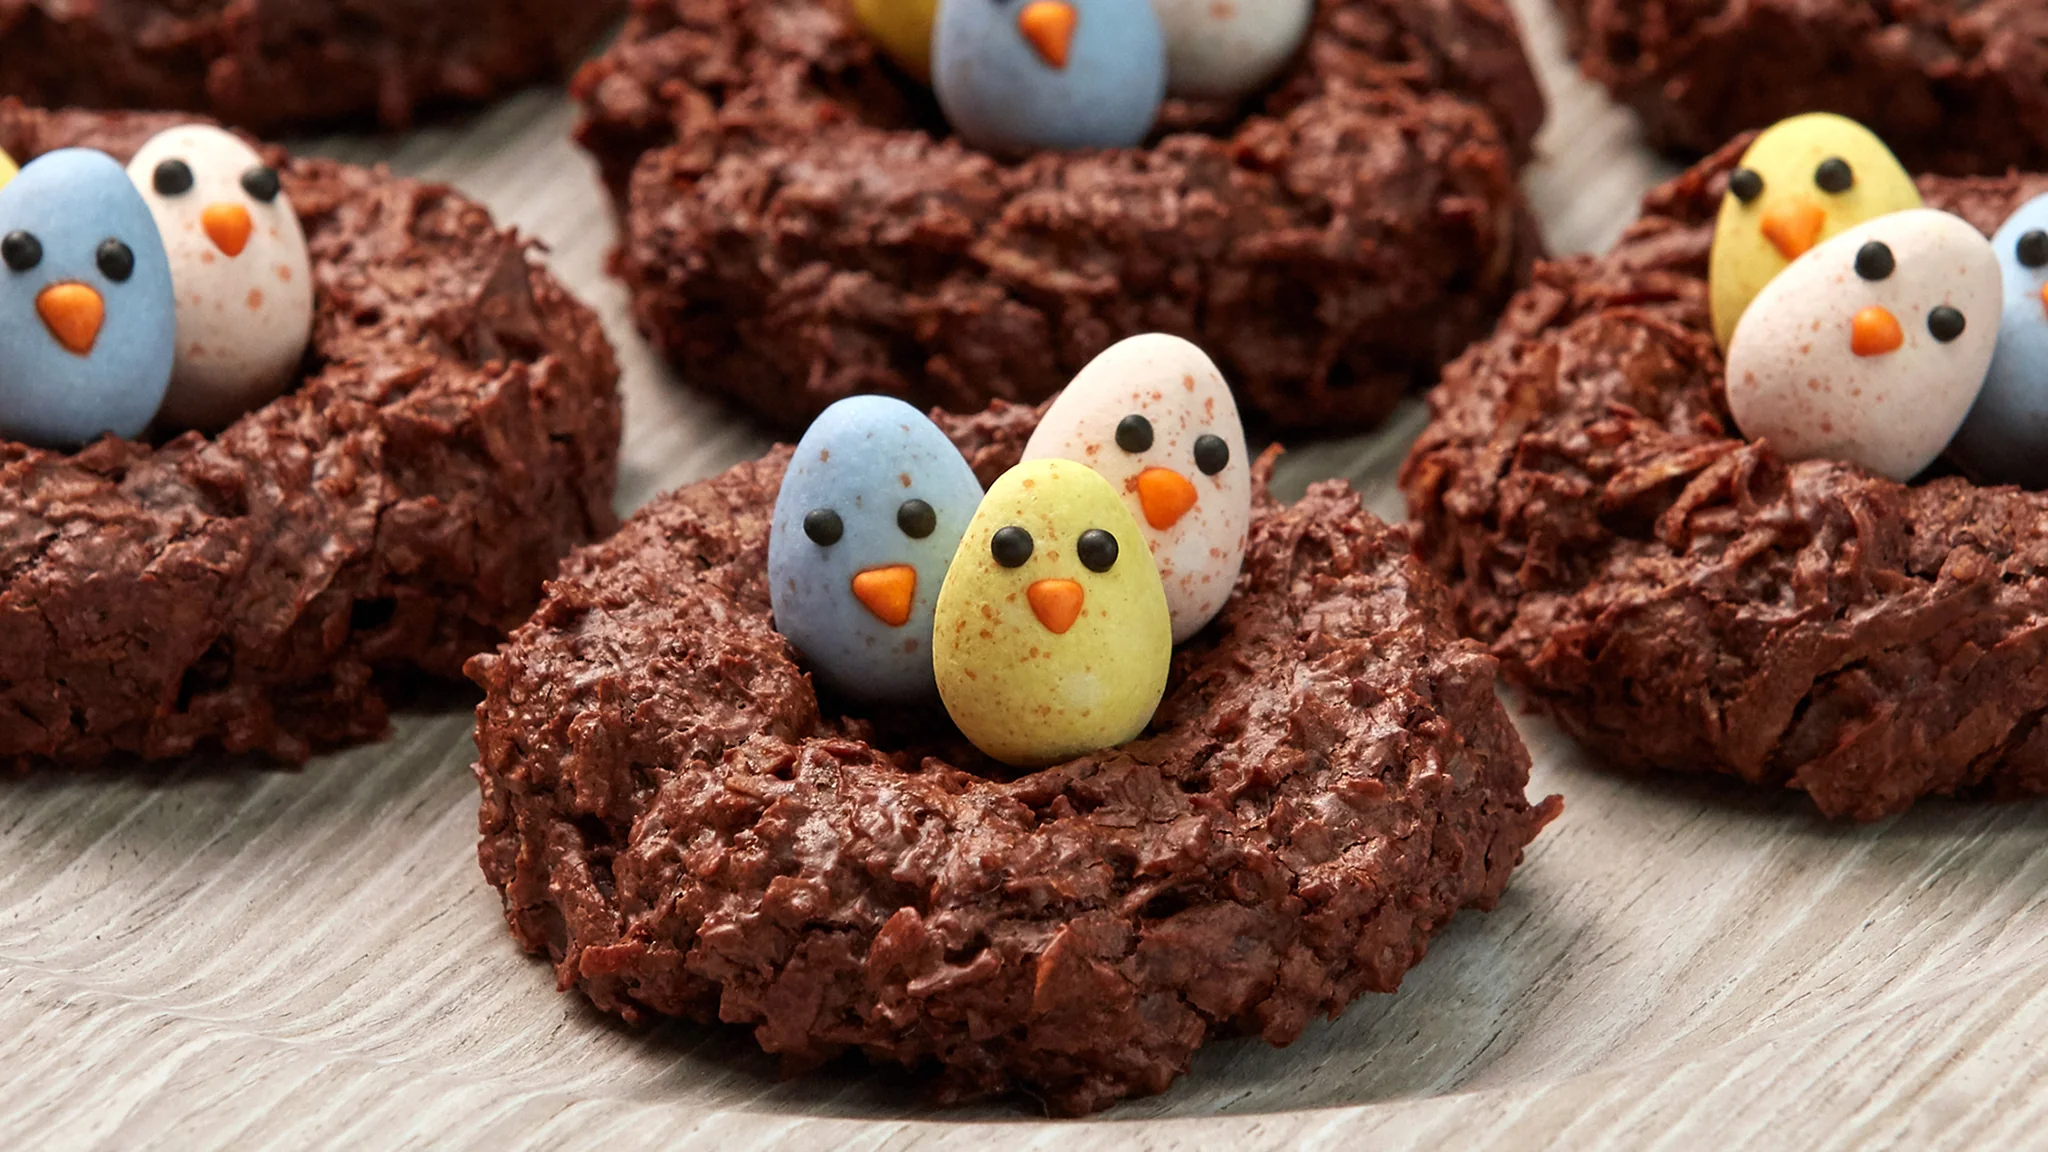 Bird Nest Cookies